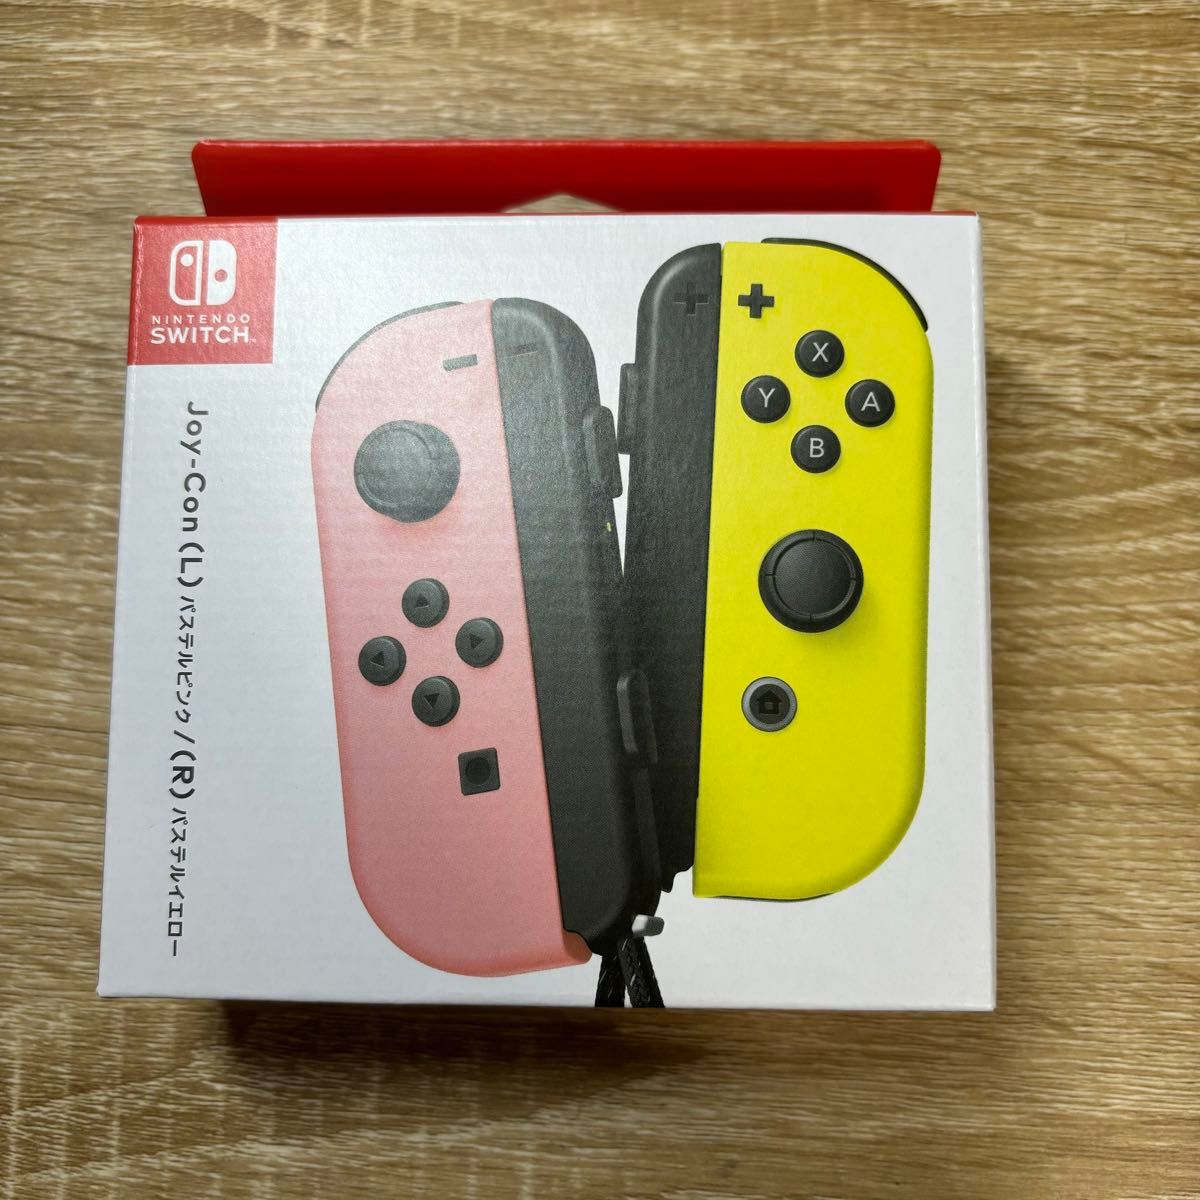 『新品未開封品 正規品』Nintendo Switch Joy-Con ジョイコン パステルピンク パステルイエロー